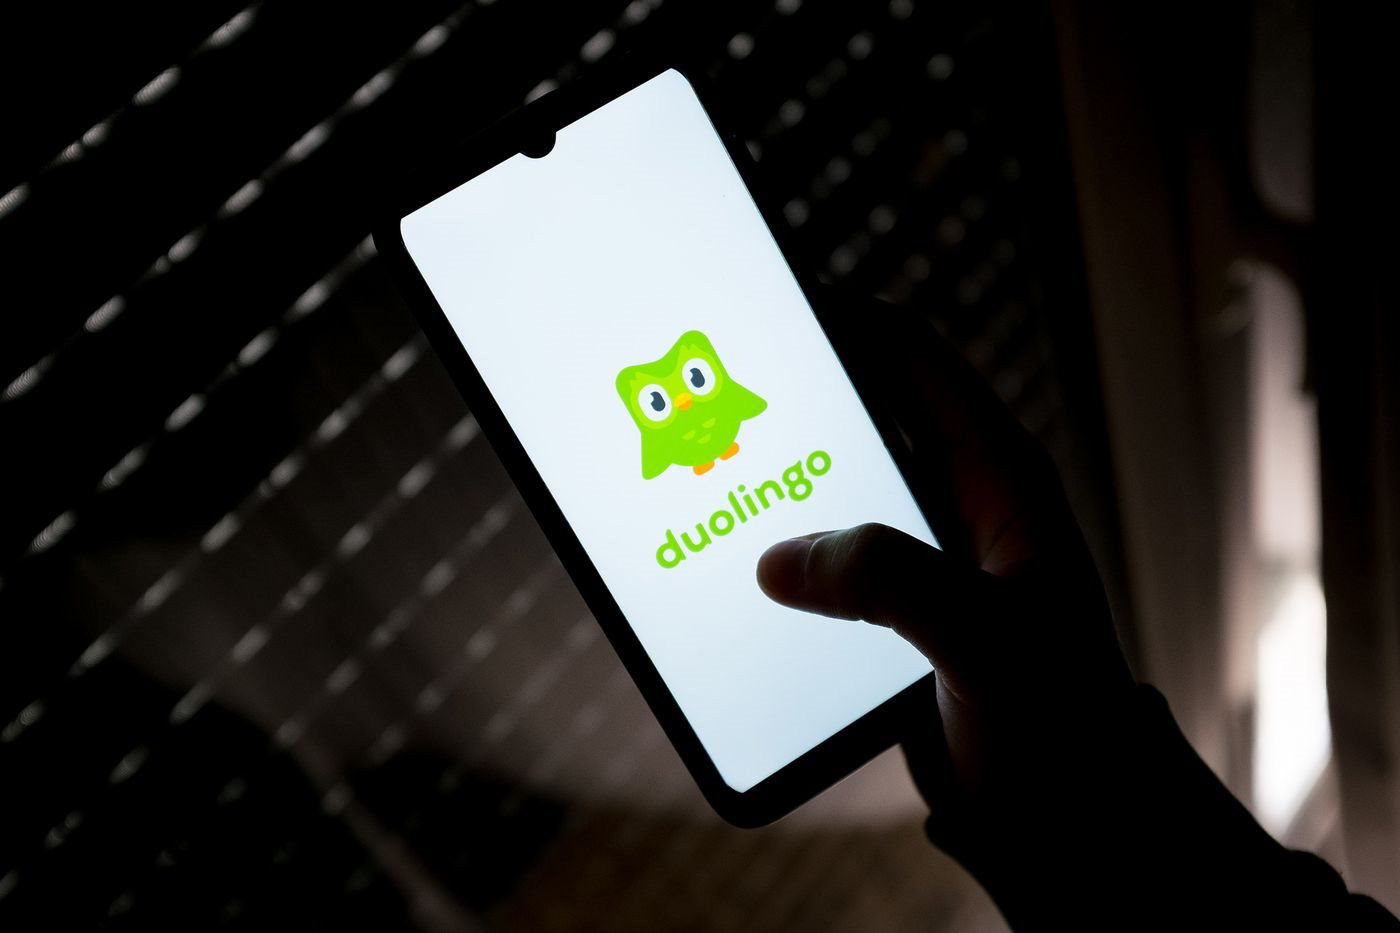 Duolingo: Từ một startup thua lỗ, CEO không màng doanh thu đến đế chế thay đổi ‘cuộc chơi’ học ngoại ngữ trực tuyến - Ảnh 2.